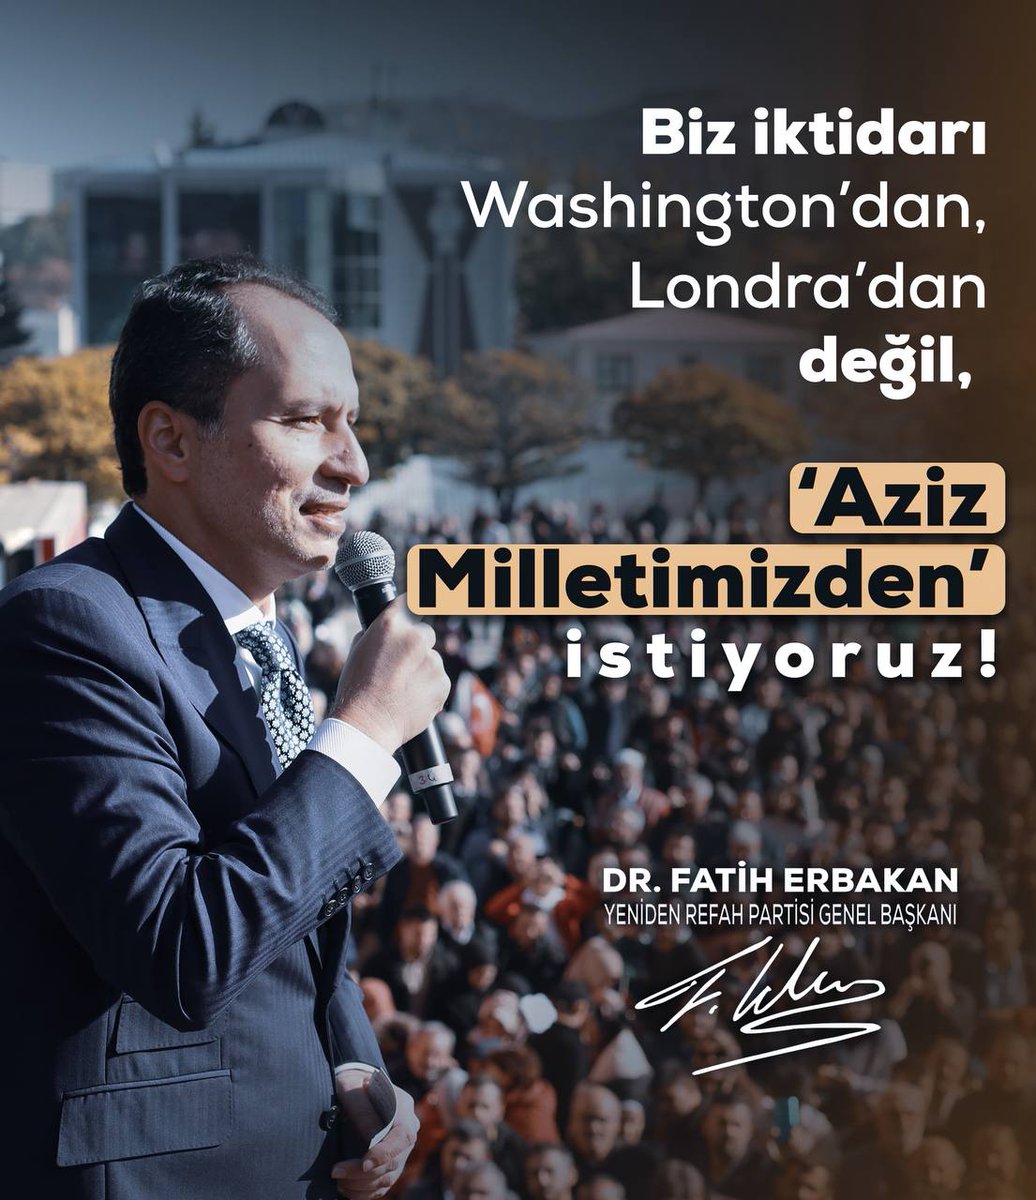 'Biz iktidarı Washington'dan, Londra'dan değil; 'Aziz Milletimizden' istiyoruz!'

Dr. Fatih Erbakan